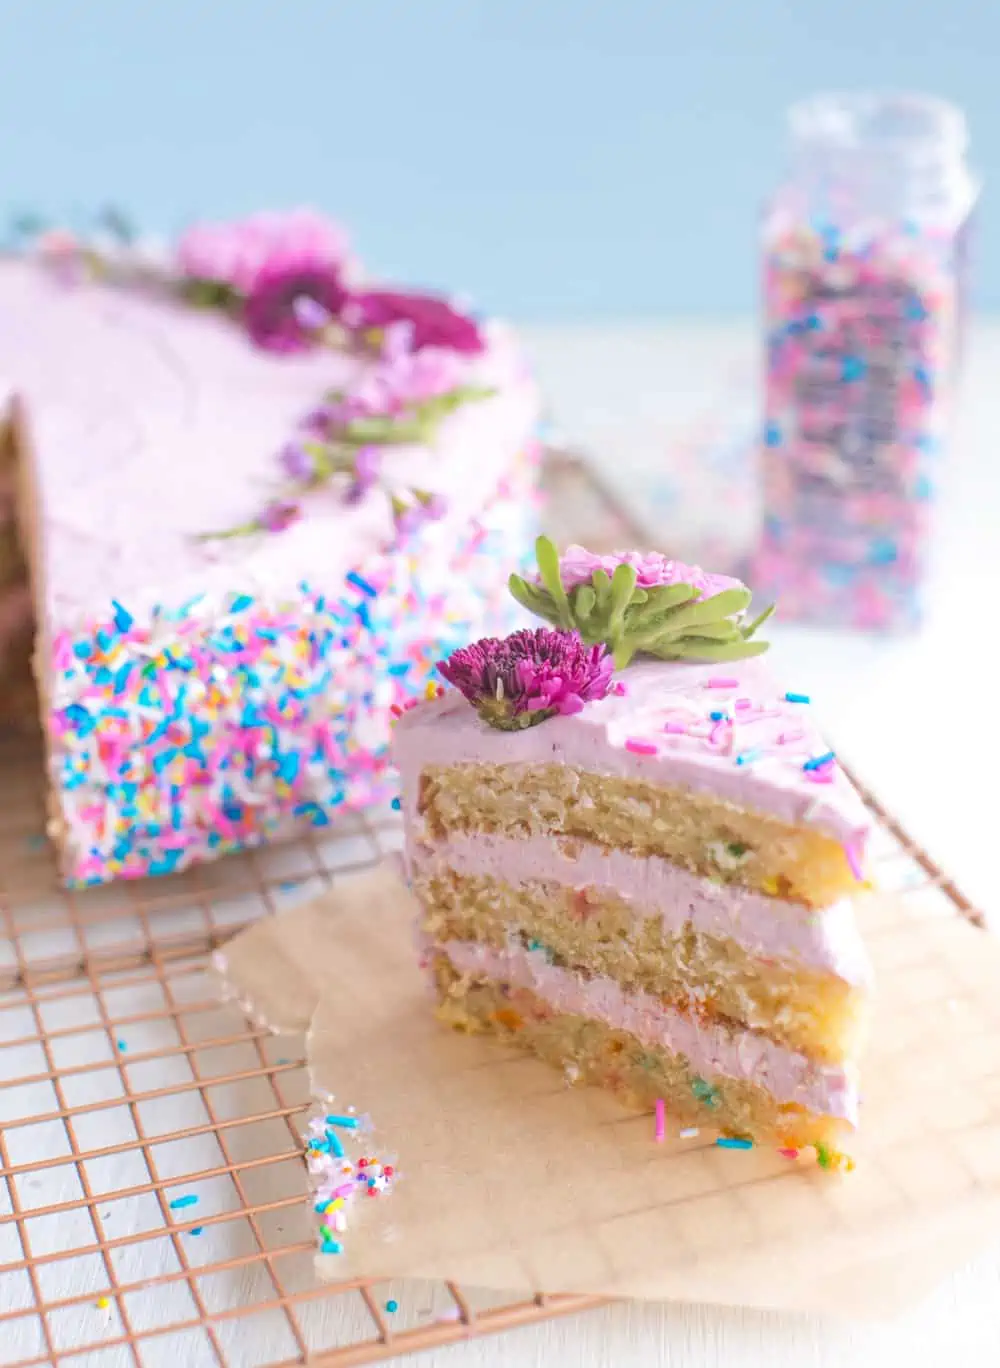 vegan birthday cake slice with sprinkles